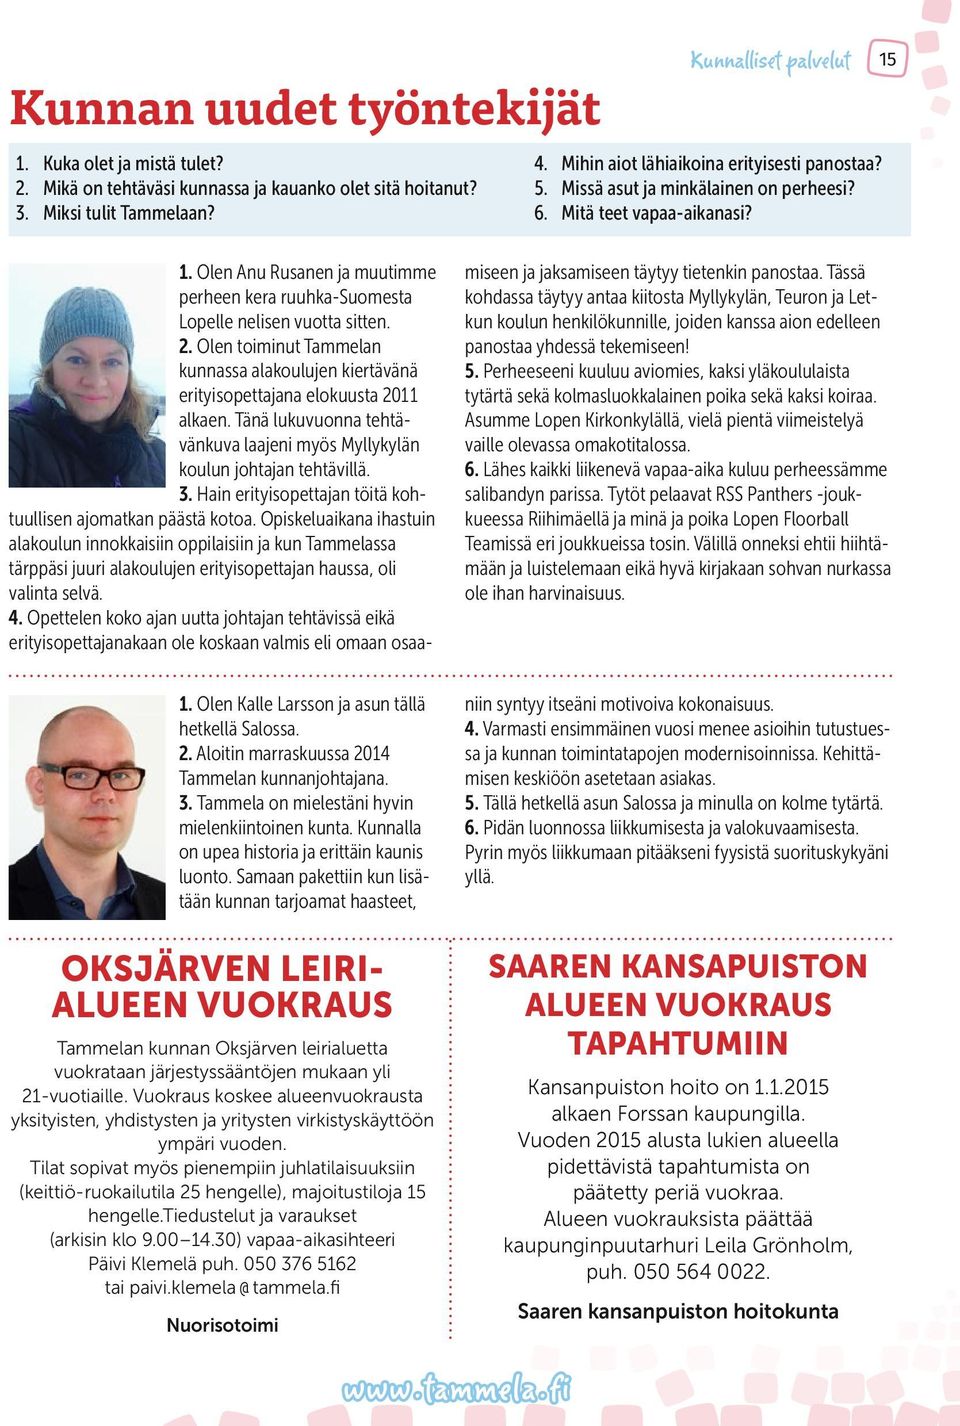 Olen Anu Rusanen ja muutimme perheen kera ruuhka-suomesta Lopelle nelisen vuotta sitten. 2. Olen toiminut Tammelan kunnassa alakoulujen kiertävänä erityisopettajana elokuusta 2011 alkaen.